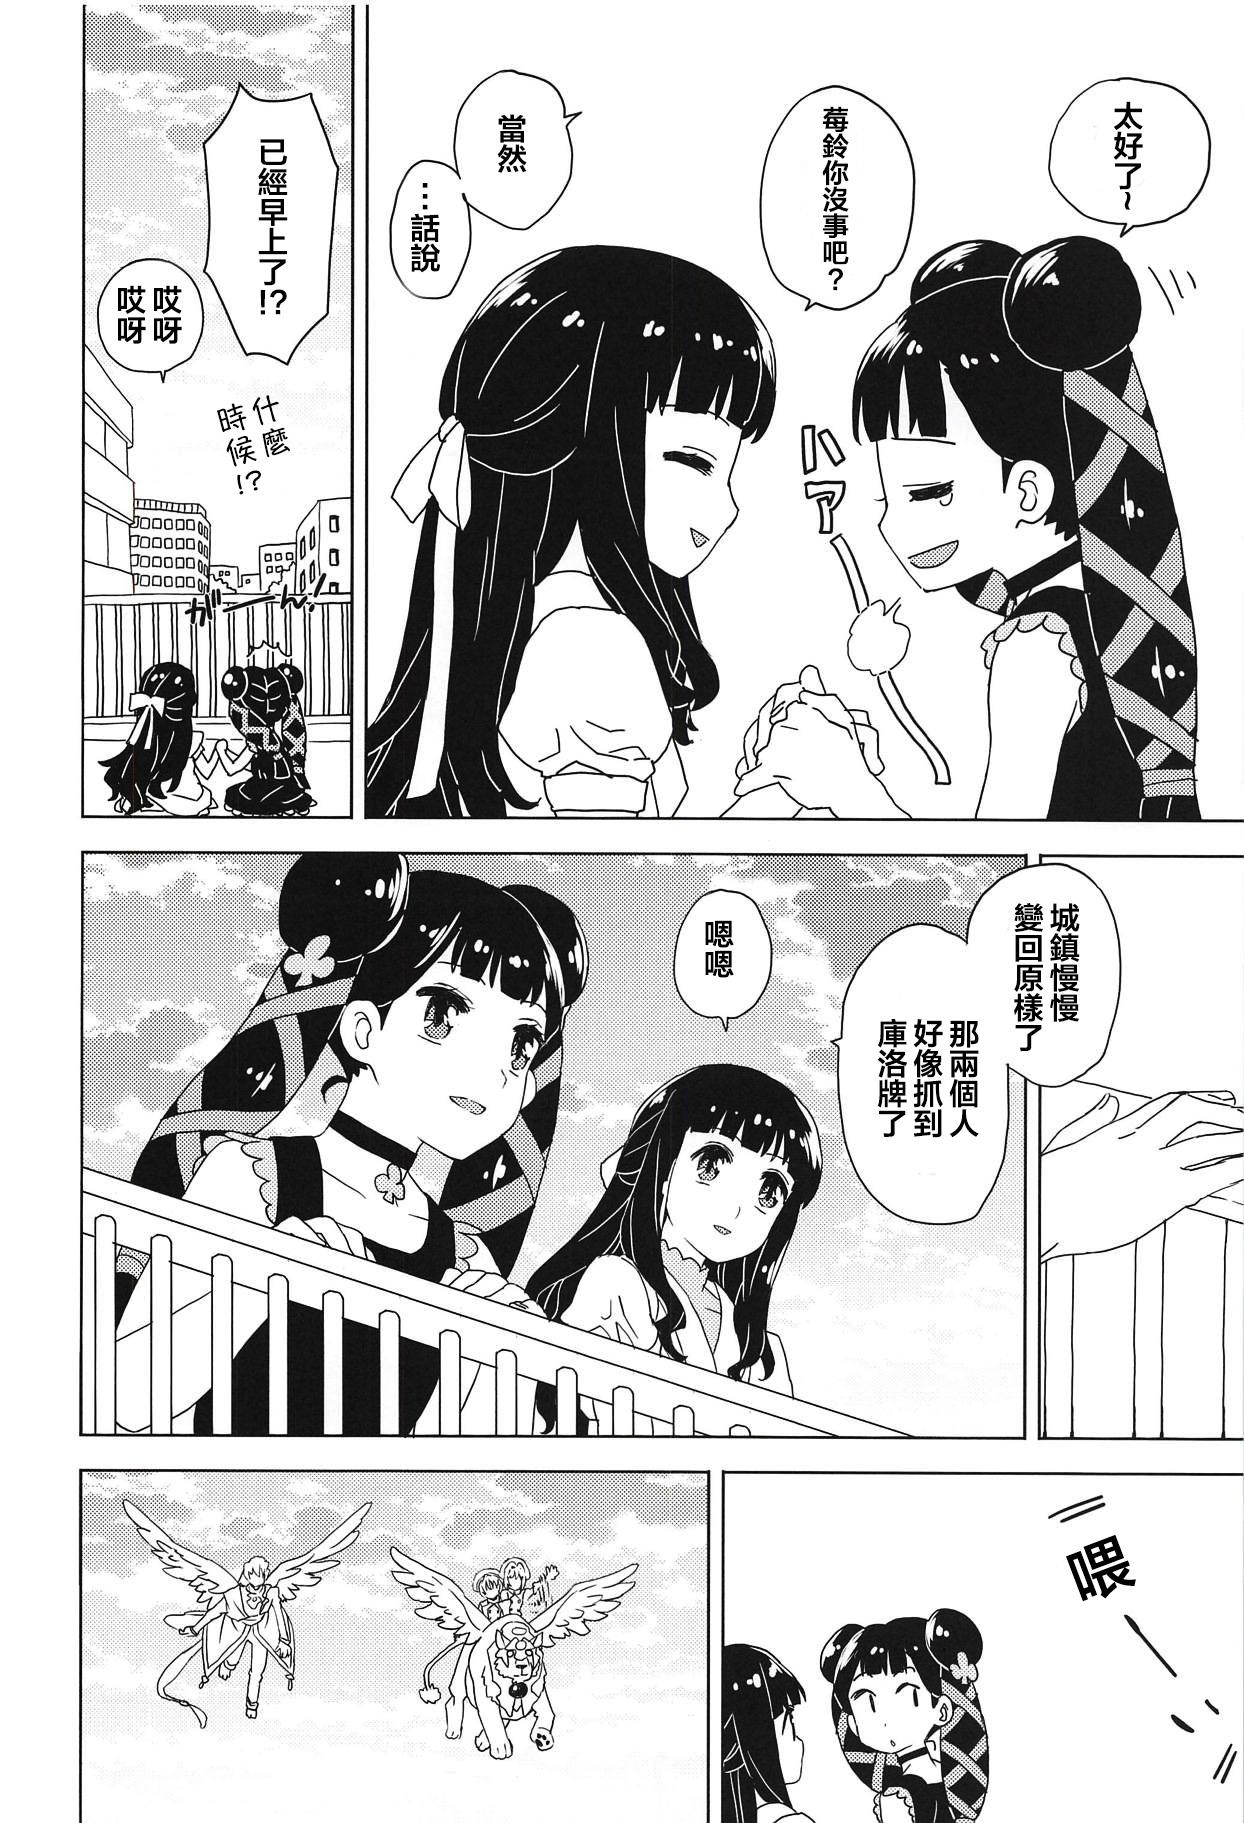 Jockstrap Geki 2 Gojitsu Banashi - Cardcaptor sakura Ex Girlfriend - Page 8